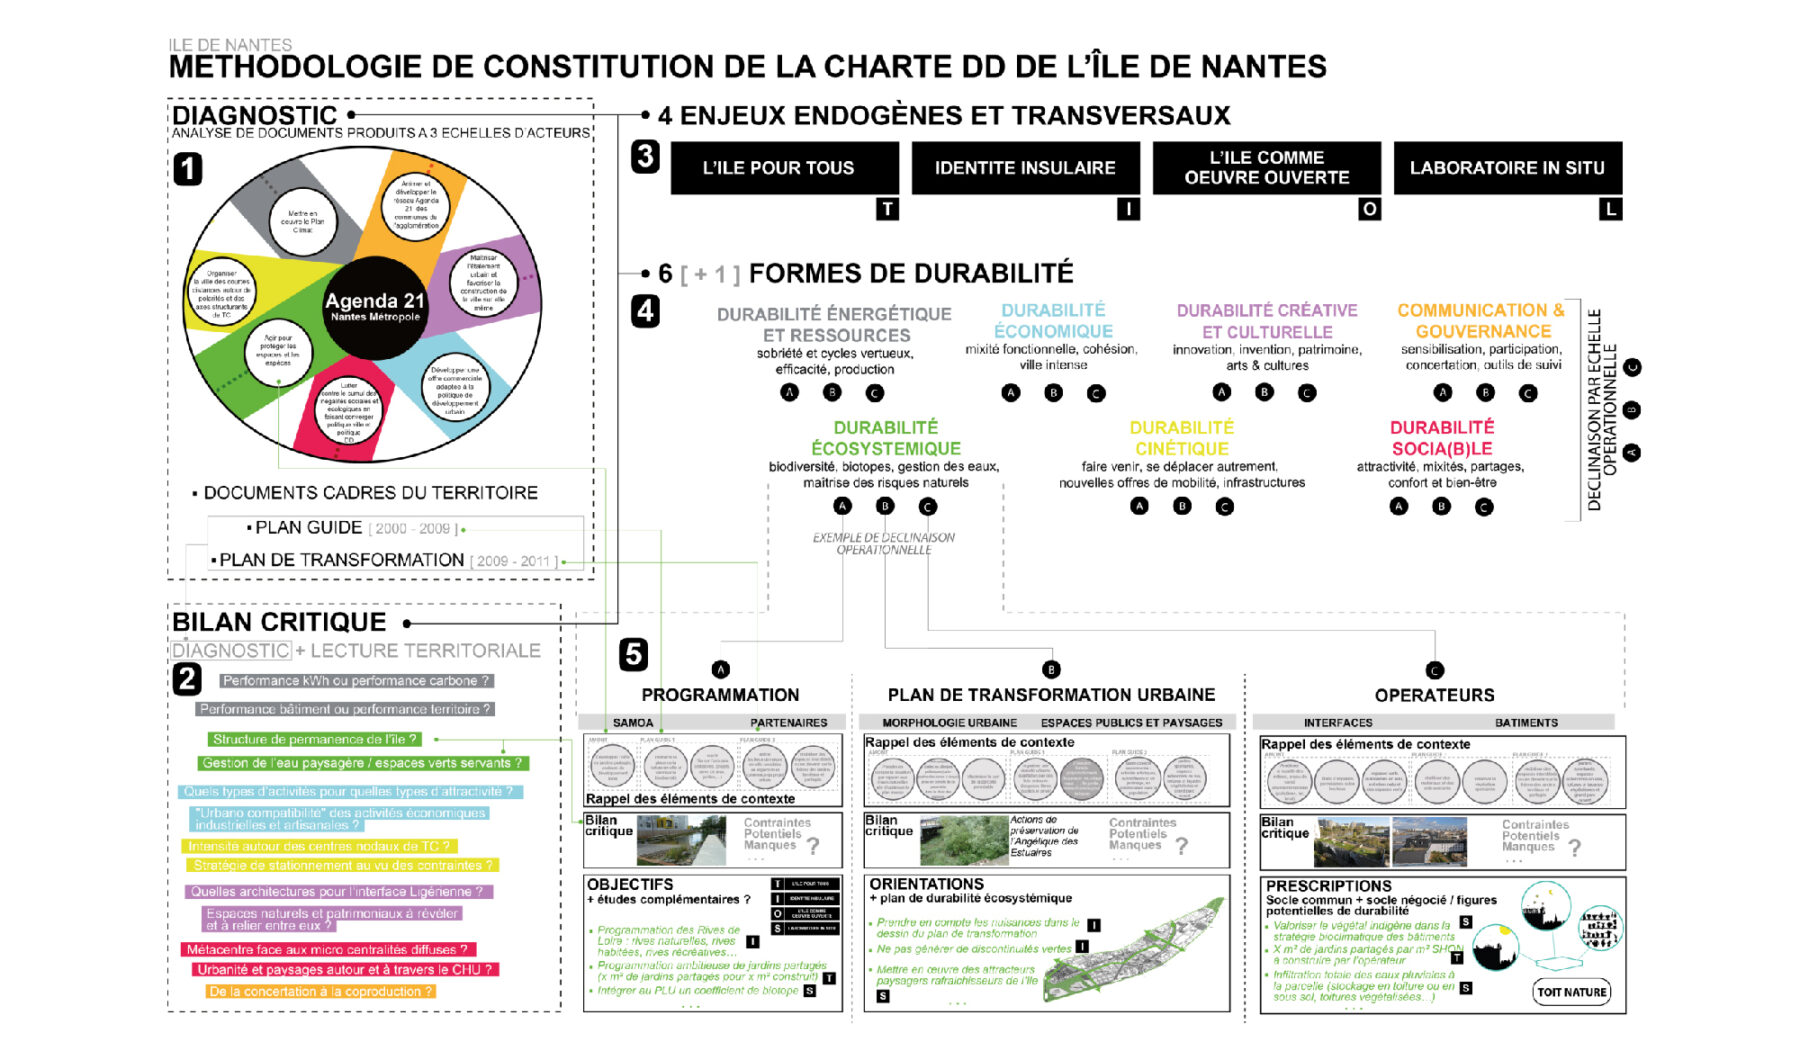 Ile de Nantes v1 méthodologie de constitution de la charte DD de lile de nantes